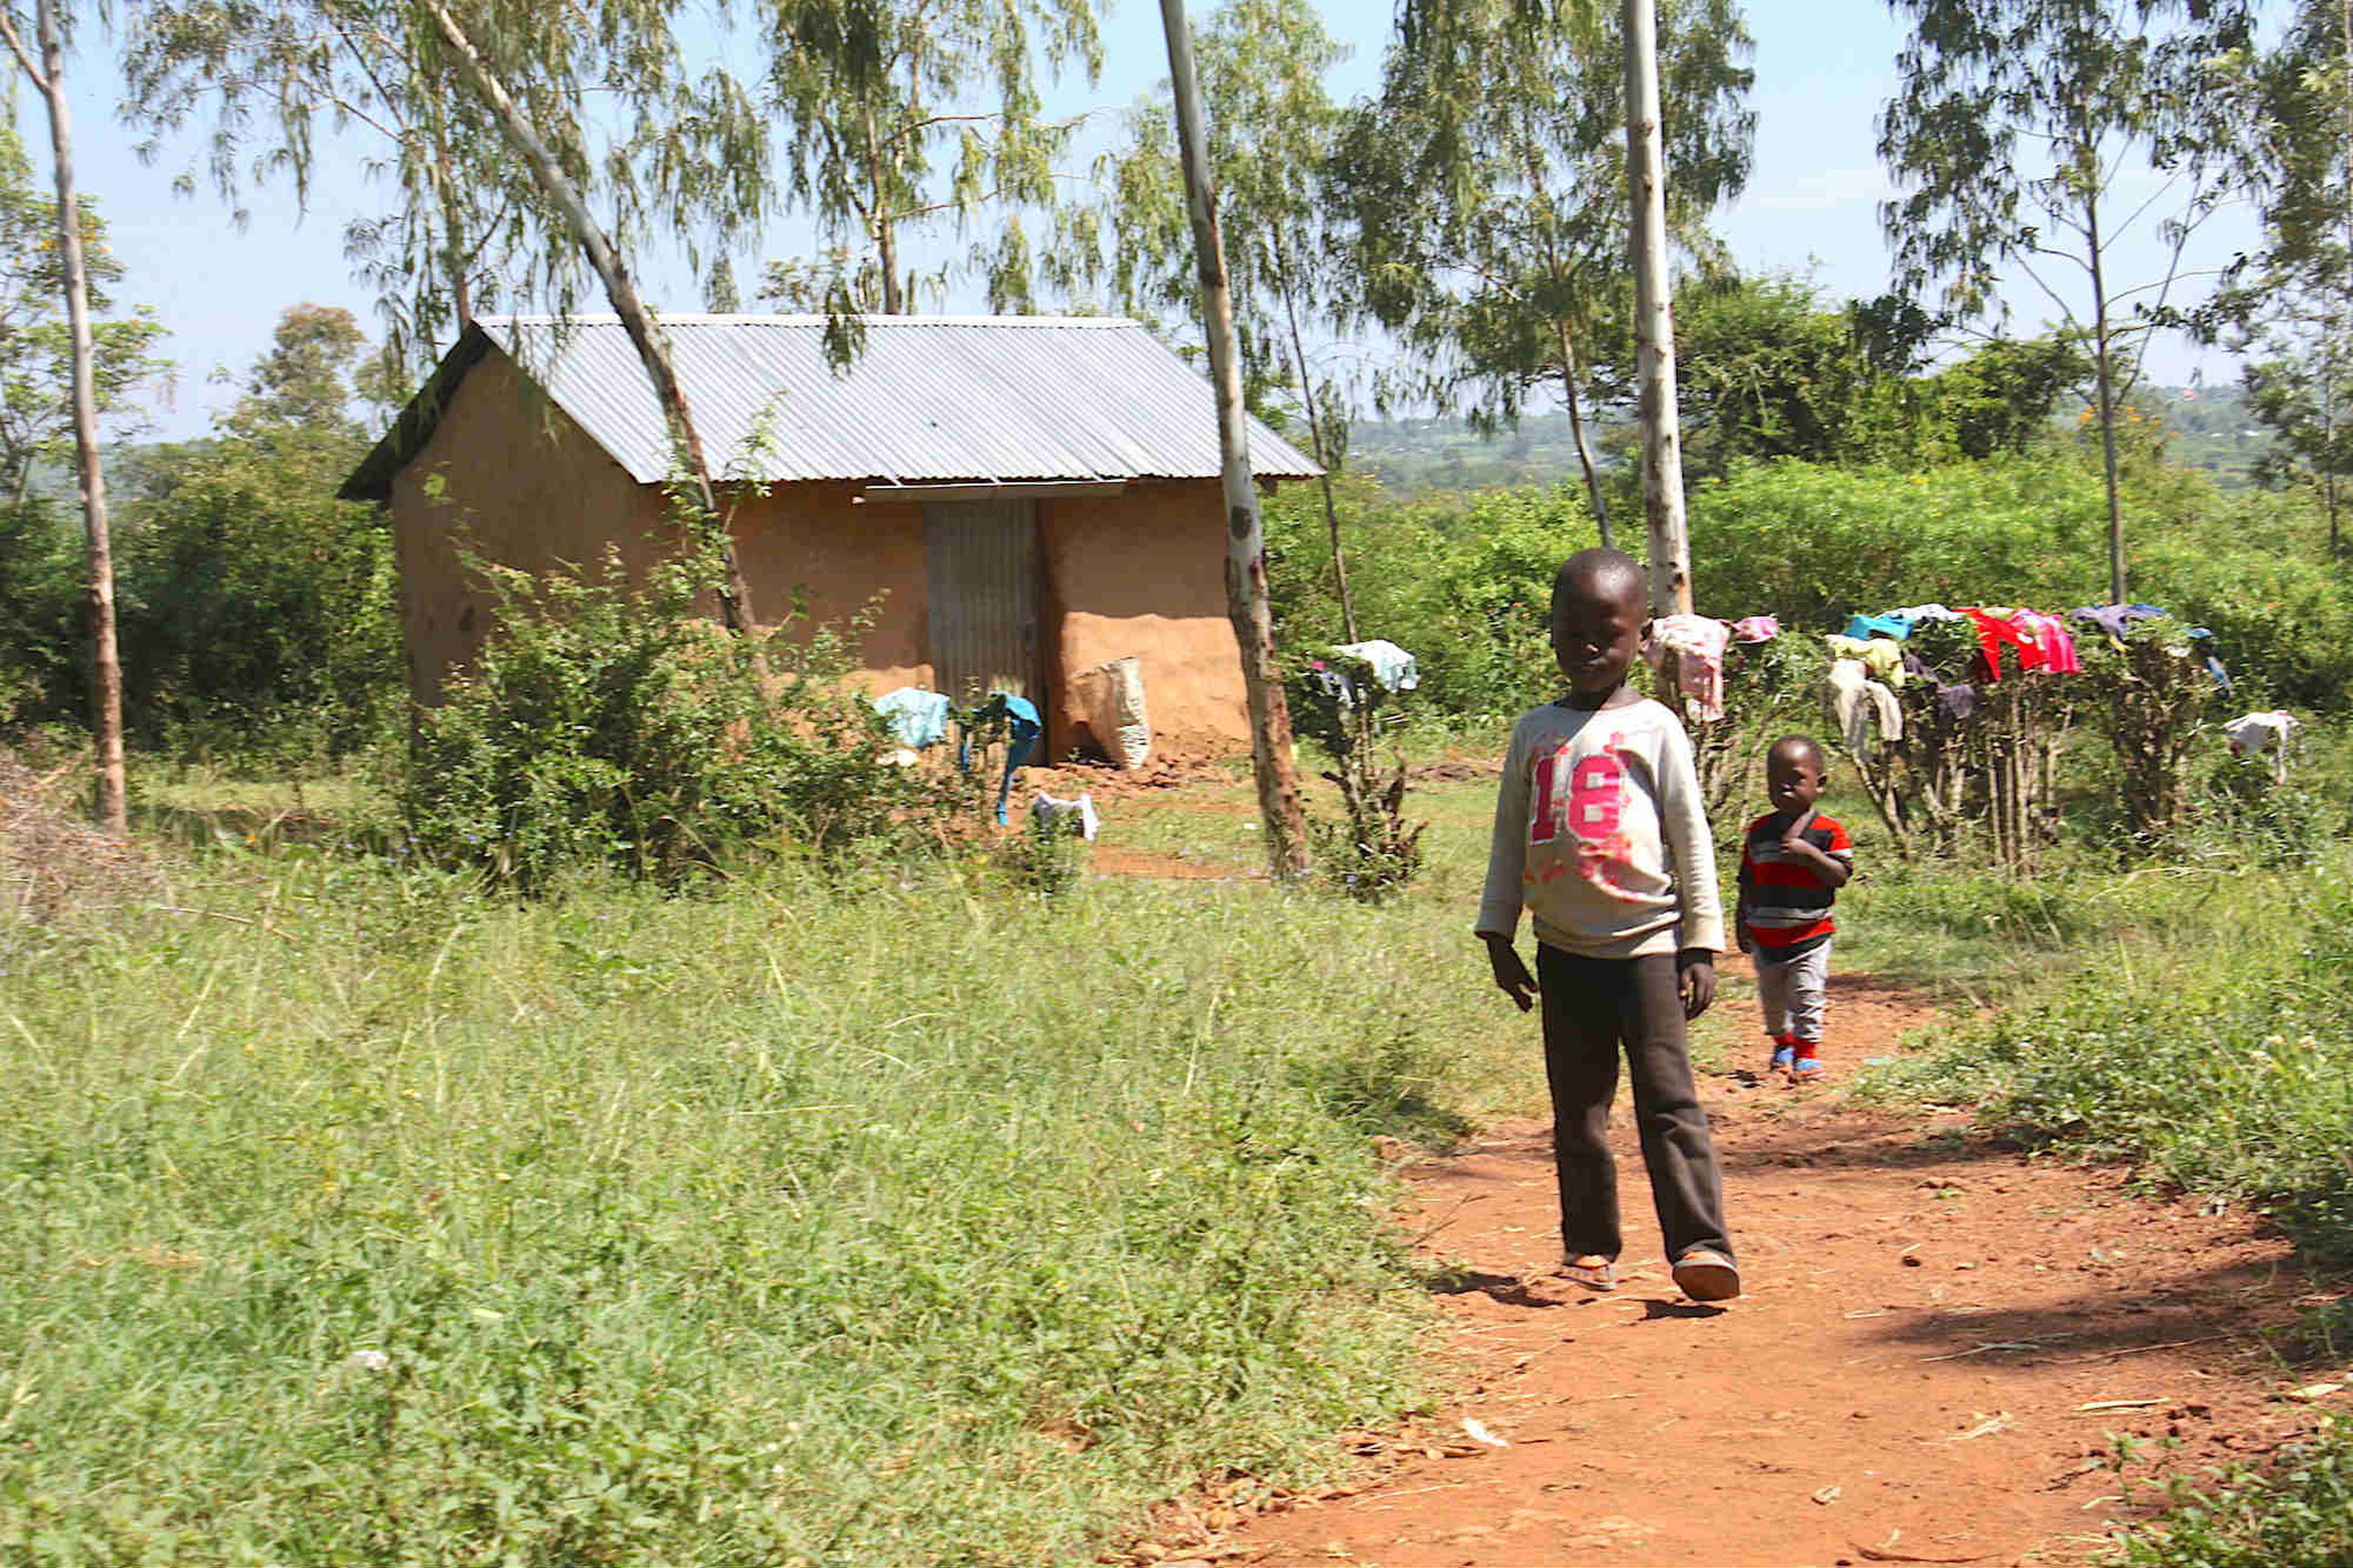 Los hijos de Anyango van a la escuela gracias a la renta universal